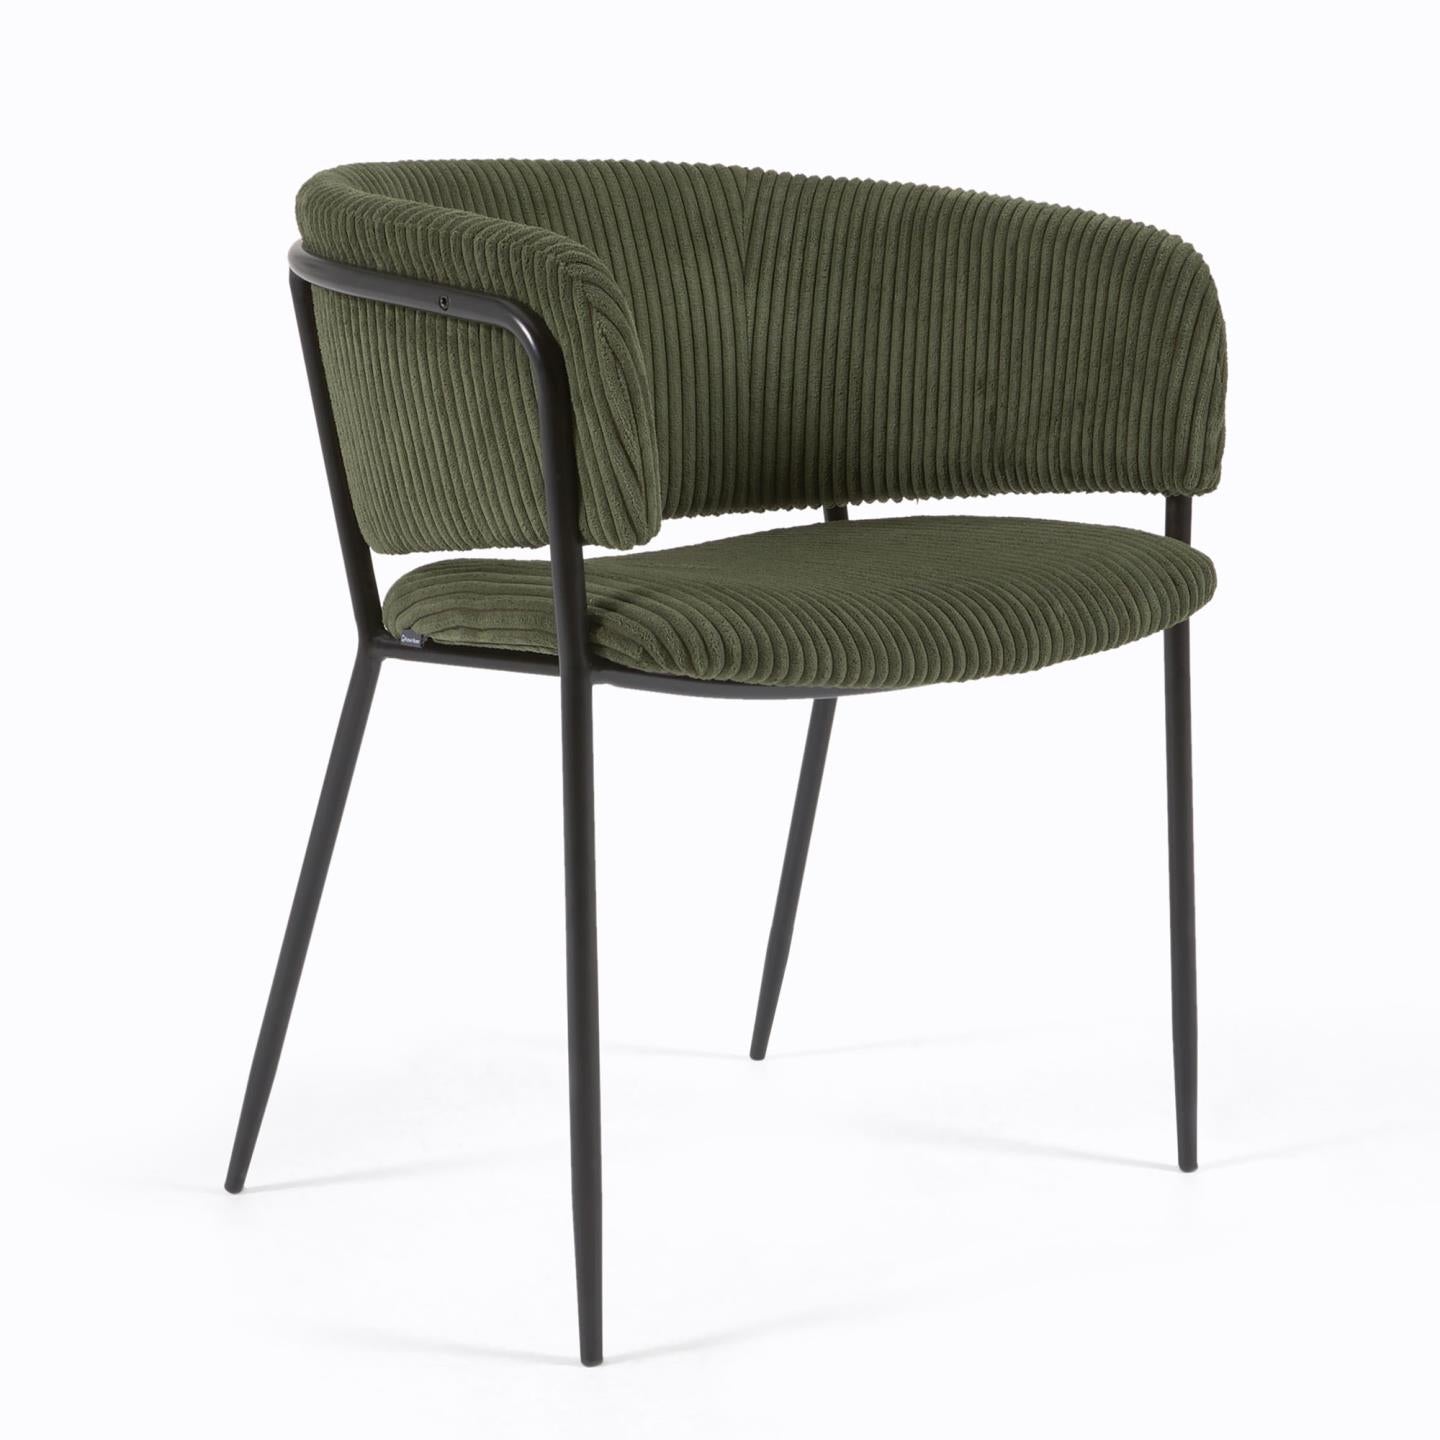 Runnie szék sötétzöld, széles varrású kordbársonyból és fekete acéllábakból készült.